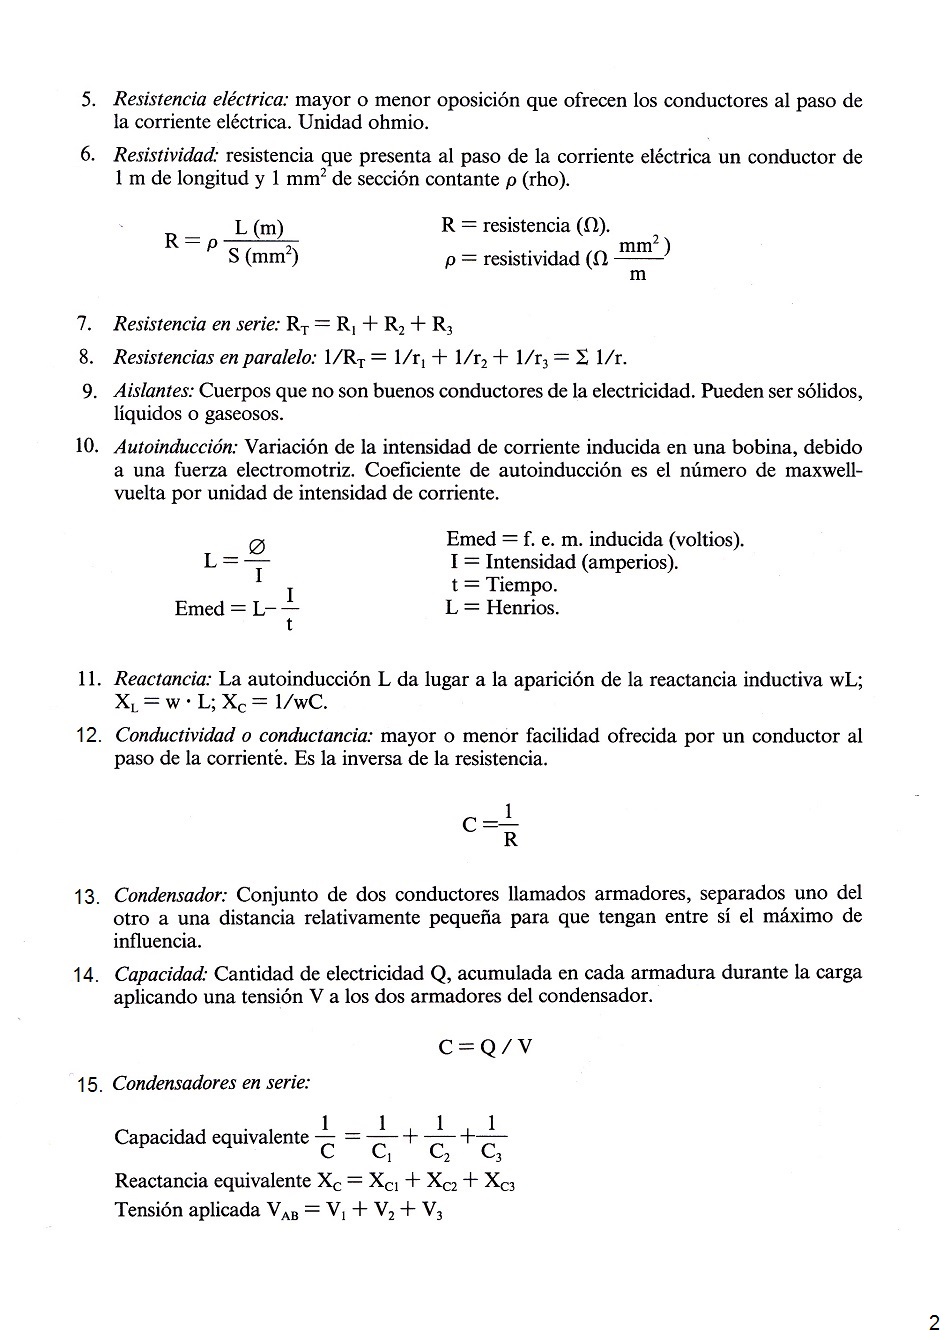 Conceptos generales de electricidad y fórmulas eléctricas. Página 02